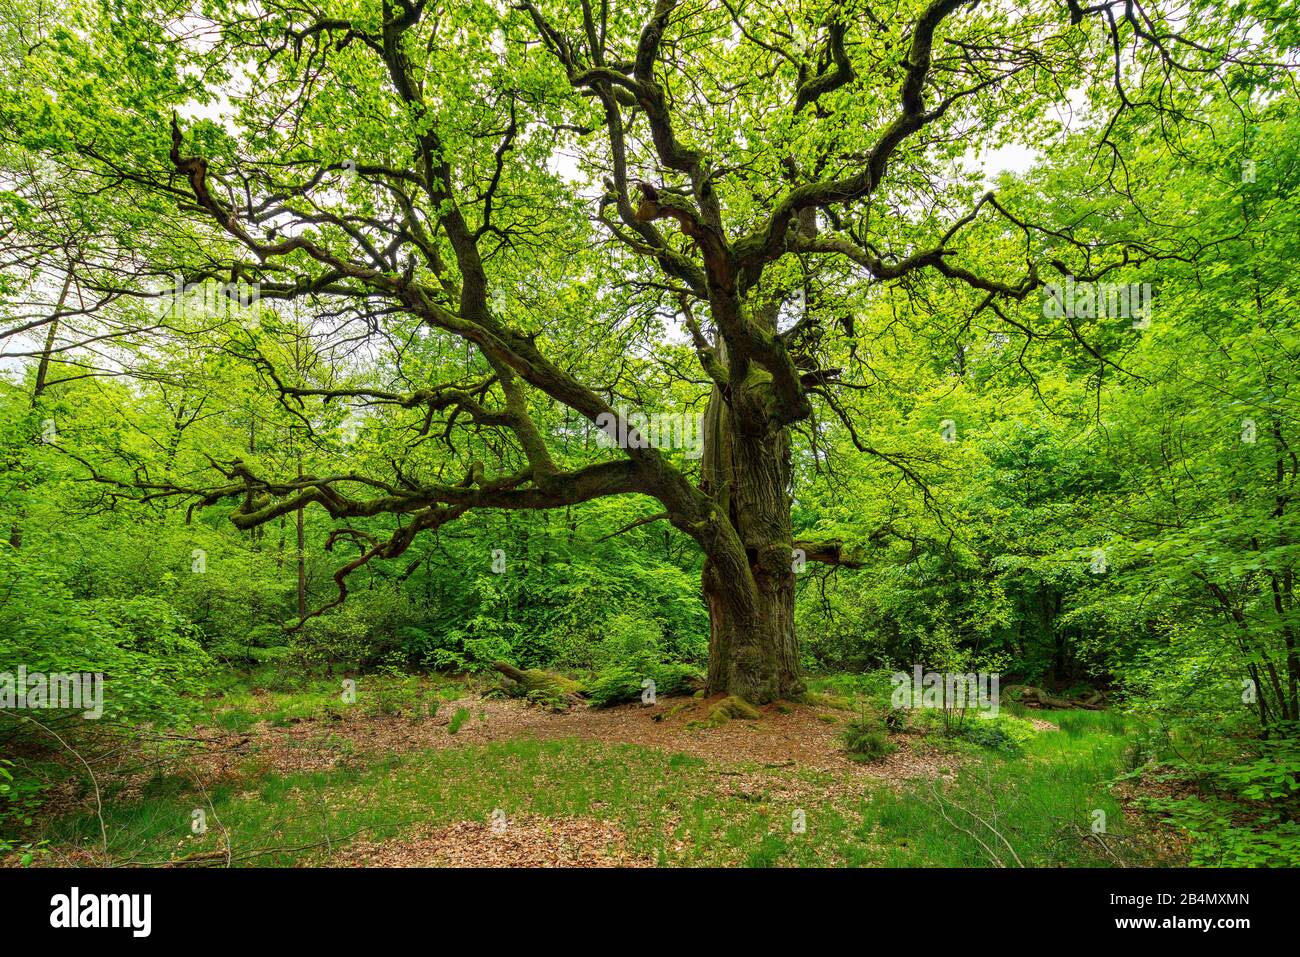 Roble viejo y enorme roblado (Quercus robur) en la limpieza en bosque verde en primavera, ramas cubiertas de musgo, vegetación fresca, antiguo sombrero, Reinhardswald, Hesse, Alemania Foto de stock